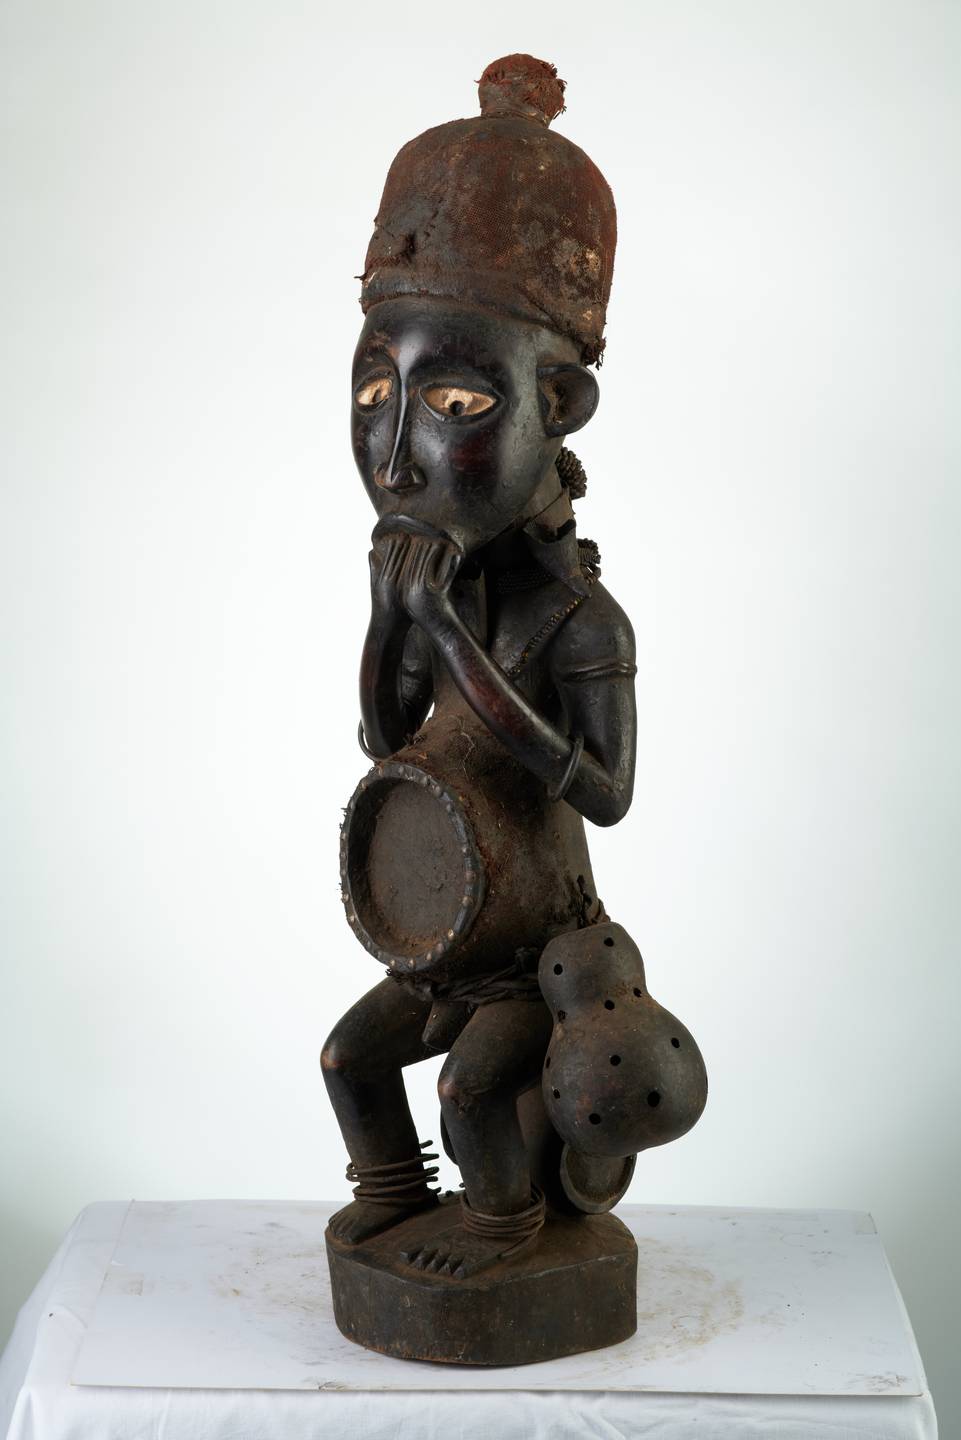 Kongo n°1982, d`afrique : R.D.C., statuette Kongo n°1982, masque ancien africain Kongo n°1982, art du R.D.C. - Art Africain, collection privées Belgique. Statue africaine de la tribu des Kongo n°1982, provenant du R.D.C., 1982 :Fétiche Sundy ou Ndindu dans le  N.O.du Kongo ( N.W.).Il est assis sur un tanneau,porte un bonnet inclus les nkissis,ainsi que les nkissis portés sur le ventre ,le dos et la nuque. Des anneaux métaliques autour des bras et des jambes.Une ceinture tressée autour de la taille avec une calabasse.Des yeux blancs avec des pupilles noirs incrustées.Les deux mains portés à la bouche. . art,culture,masque,statue,statuette,pot,ivoire,exposition,expo,masque original,masques,statues,statuettes,pots,expositions,expo,masques originaux,collectionneur d`art,art africain,culture africaine,masque africain,statue africaine,statuette africaine,pot africain,ivoire africain,exposition africain,expo africain,masque origina africainl,masques africains,statues africaines,statuettes africaines,pots africains,expositions africaines,expo africaines,masques originaux  africains,collectionneur d`art africain